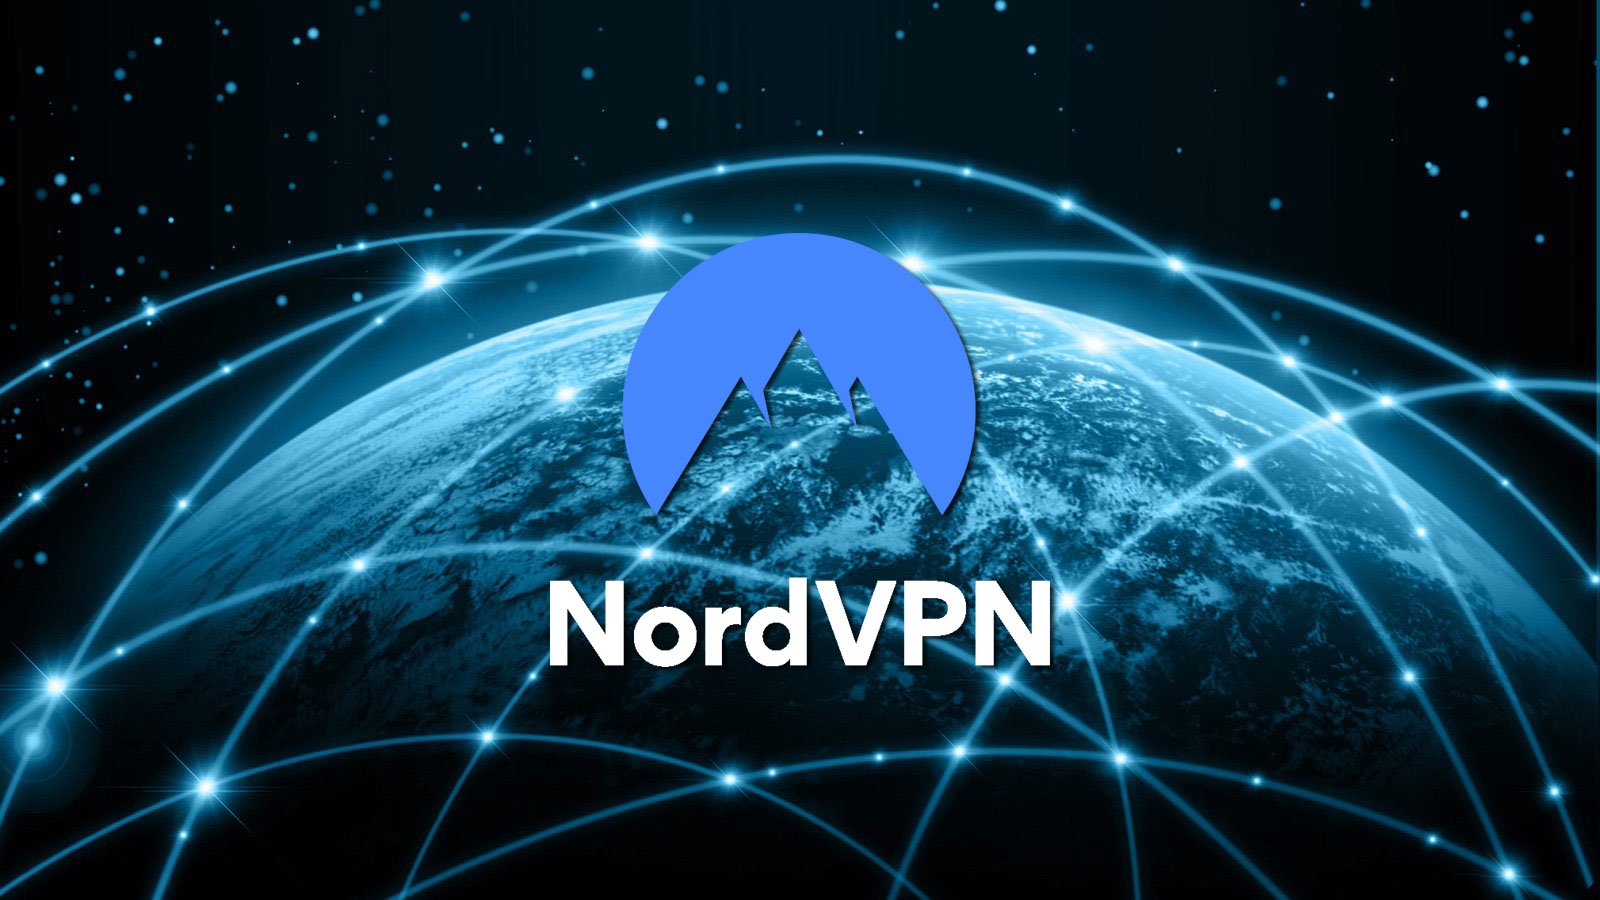 NordVPN logo over a connected world